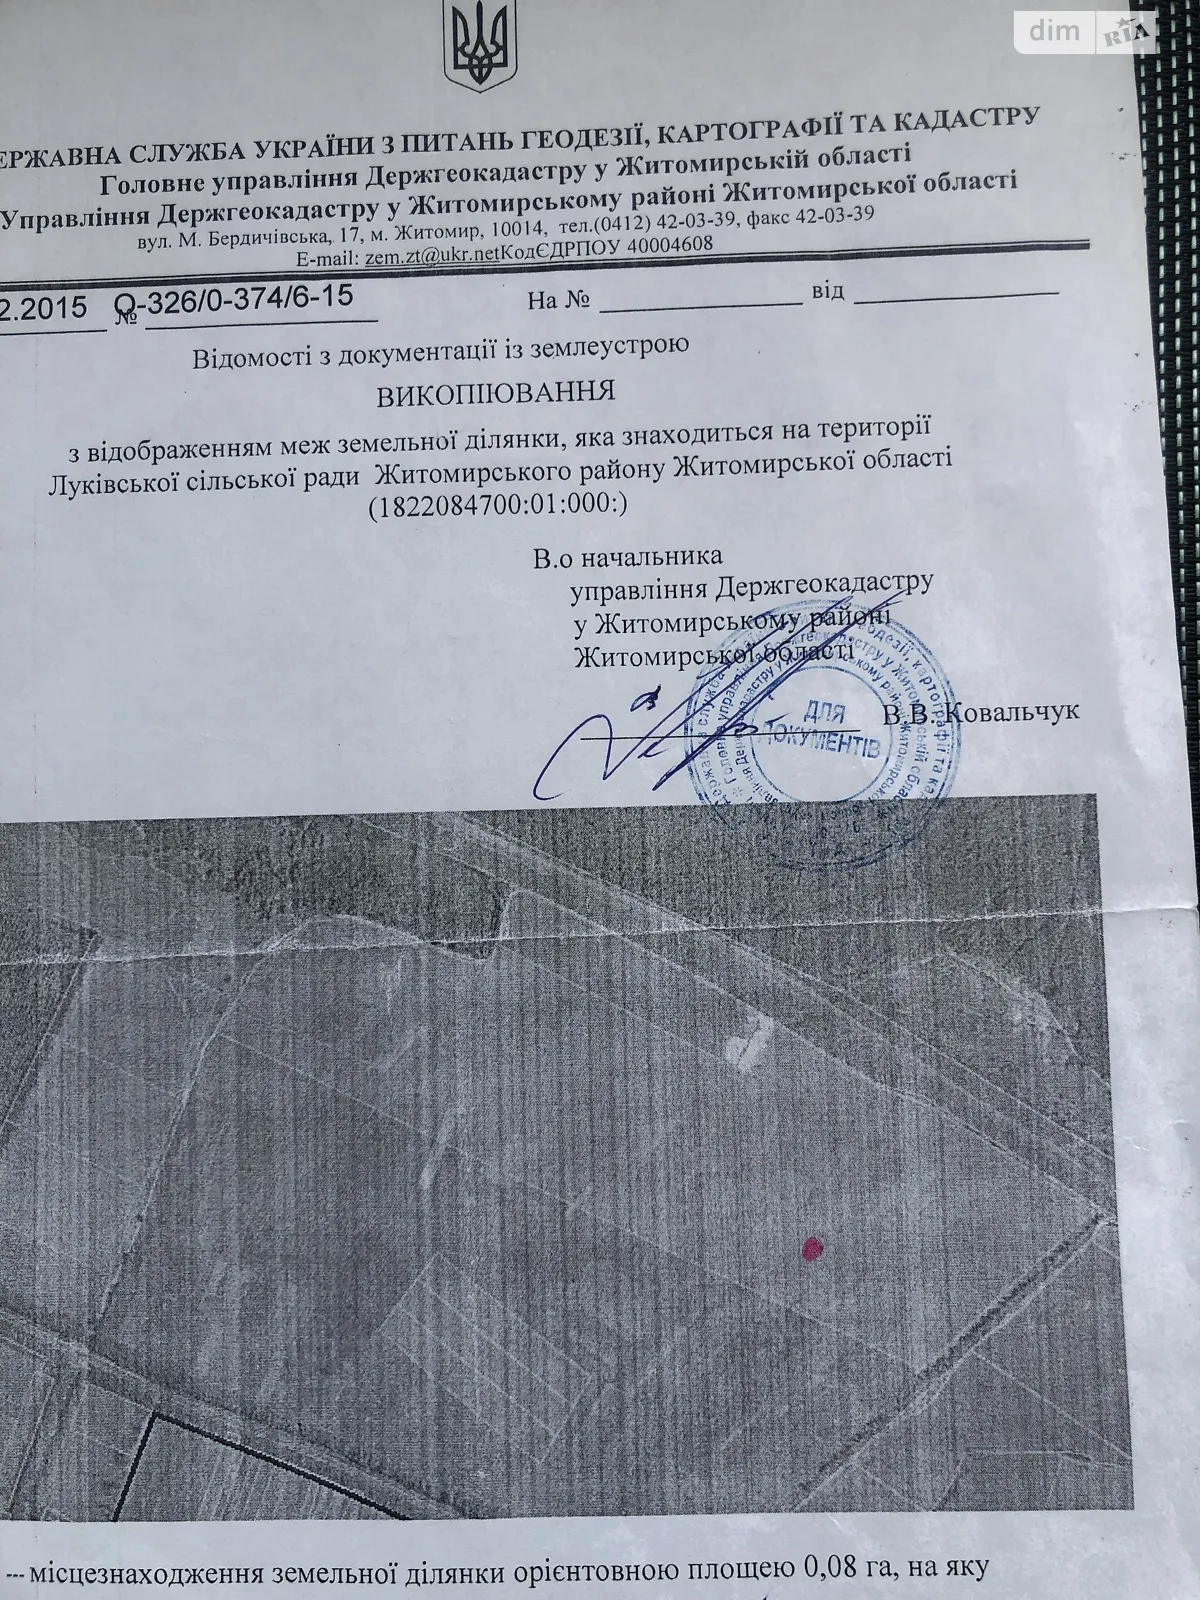 Продається земельна ділянка 0.8 соток у Житомирській області, цена: 220000 грн - фото 1